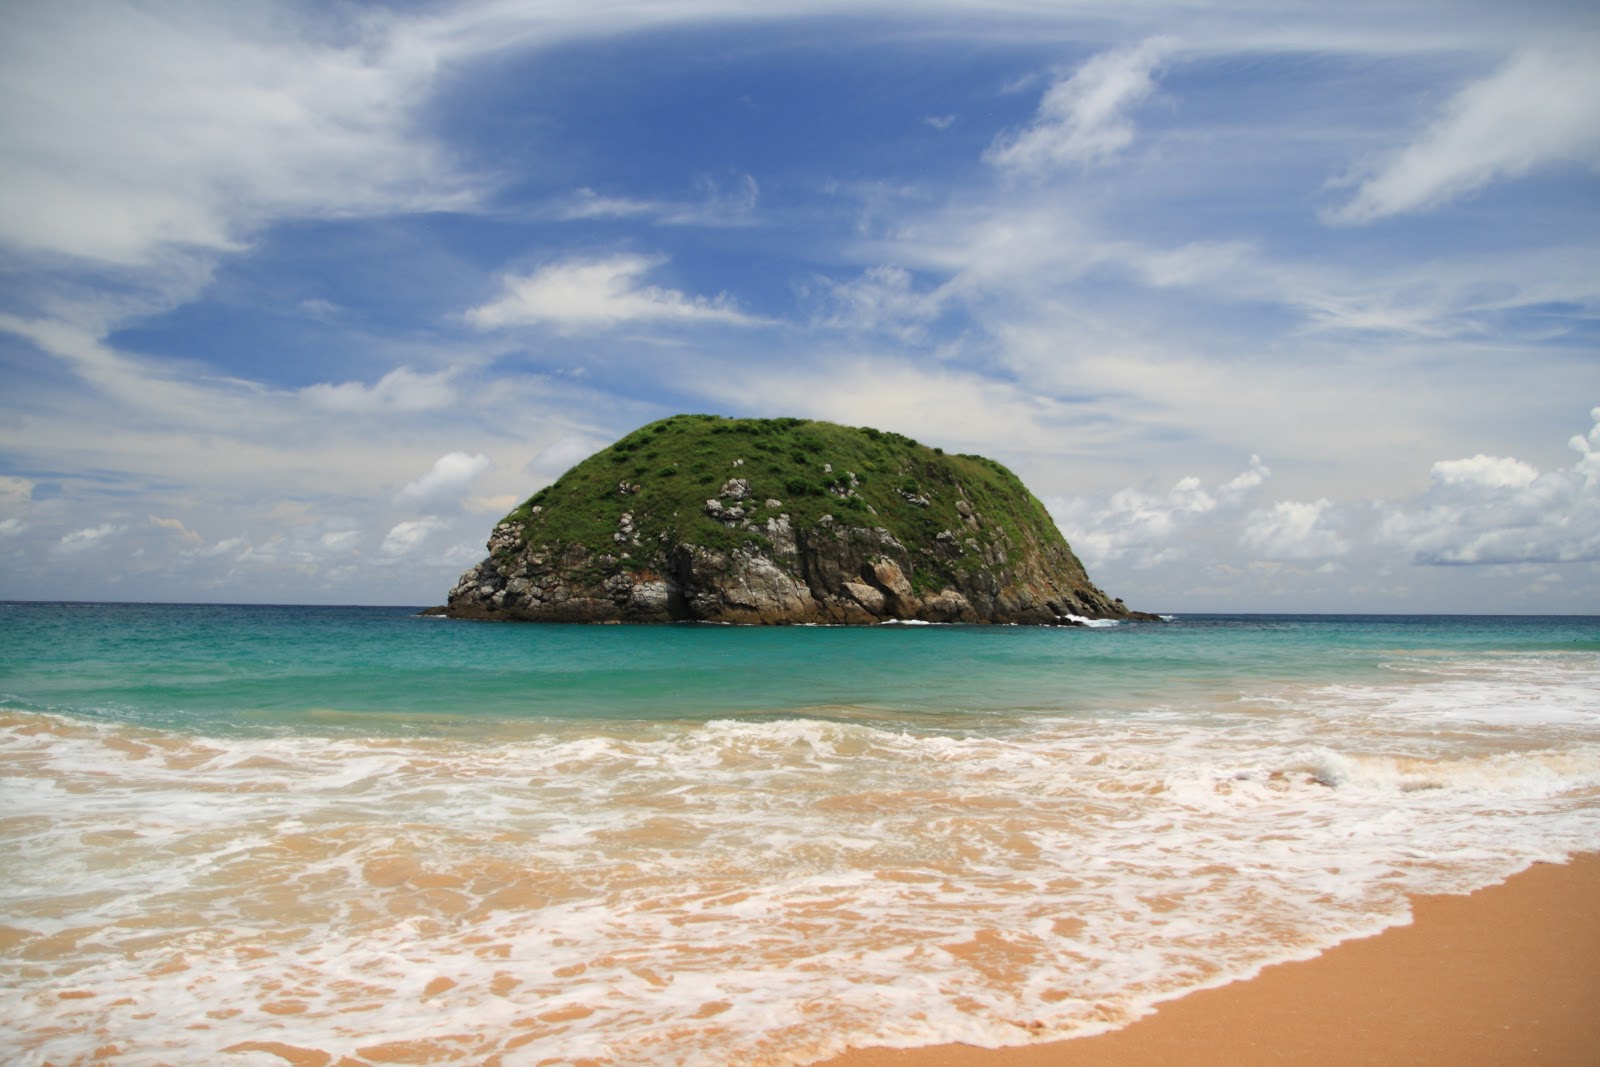 Valokuva Praia Do Leaoista. sijaitsee luonnonalueella